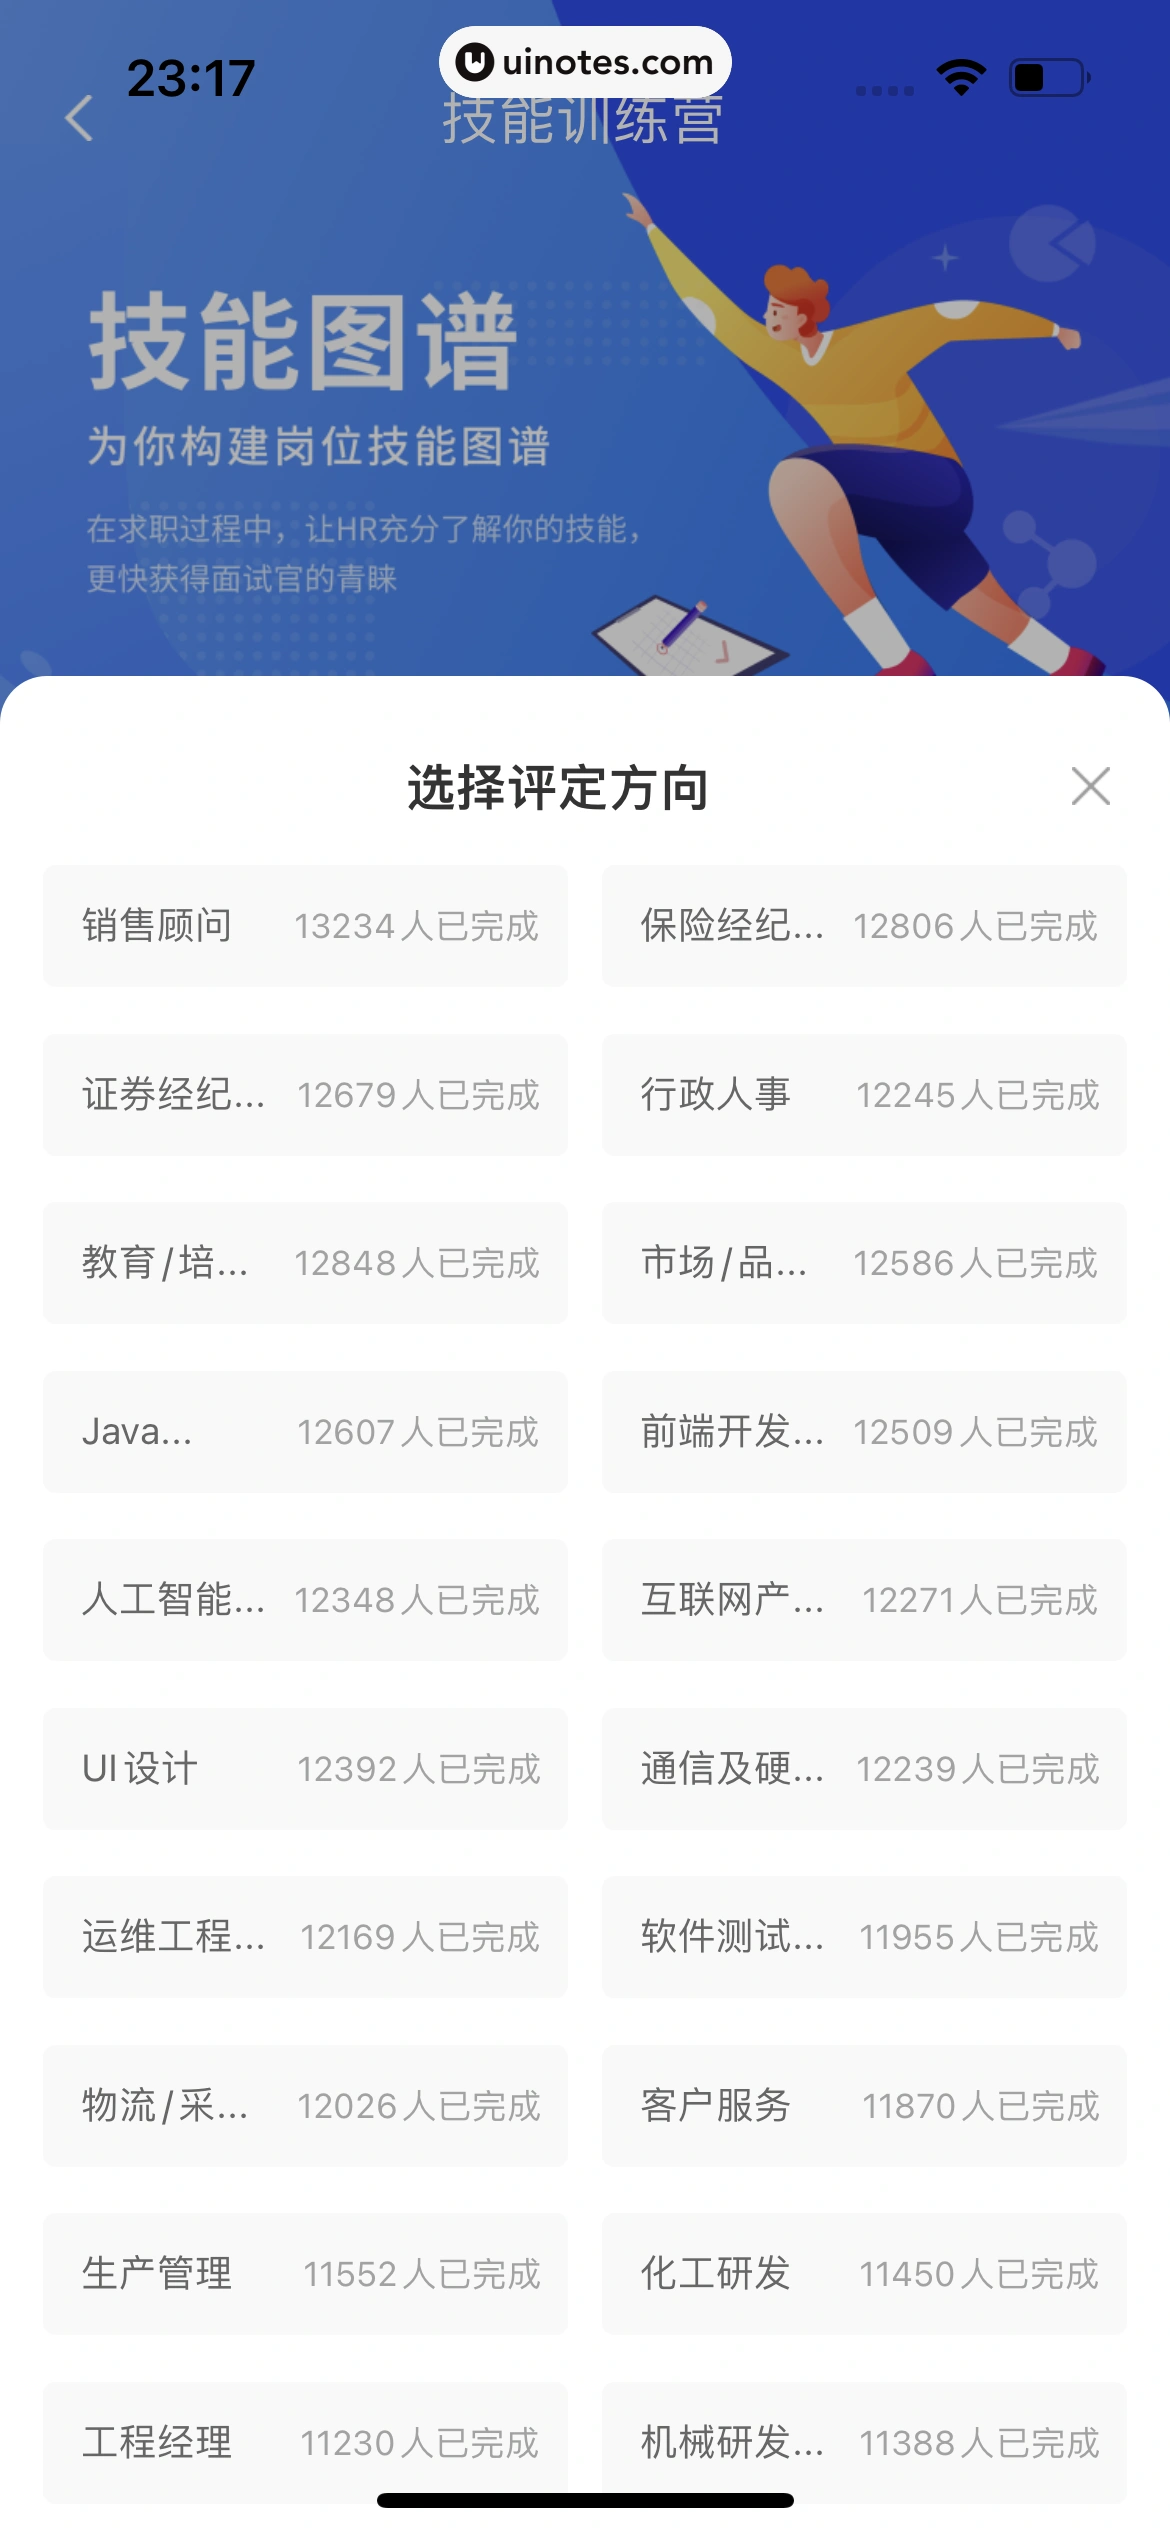 智联招聘 App 截图 550 - UI Notes